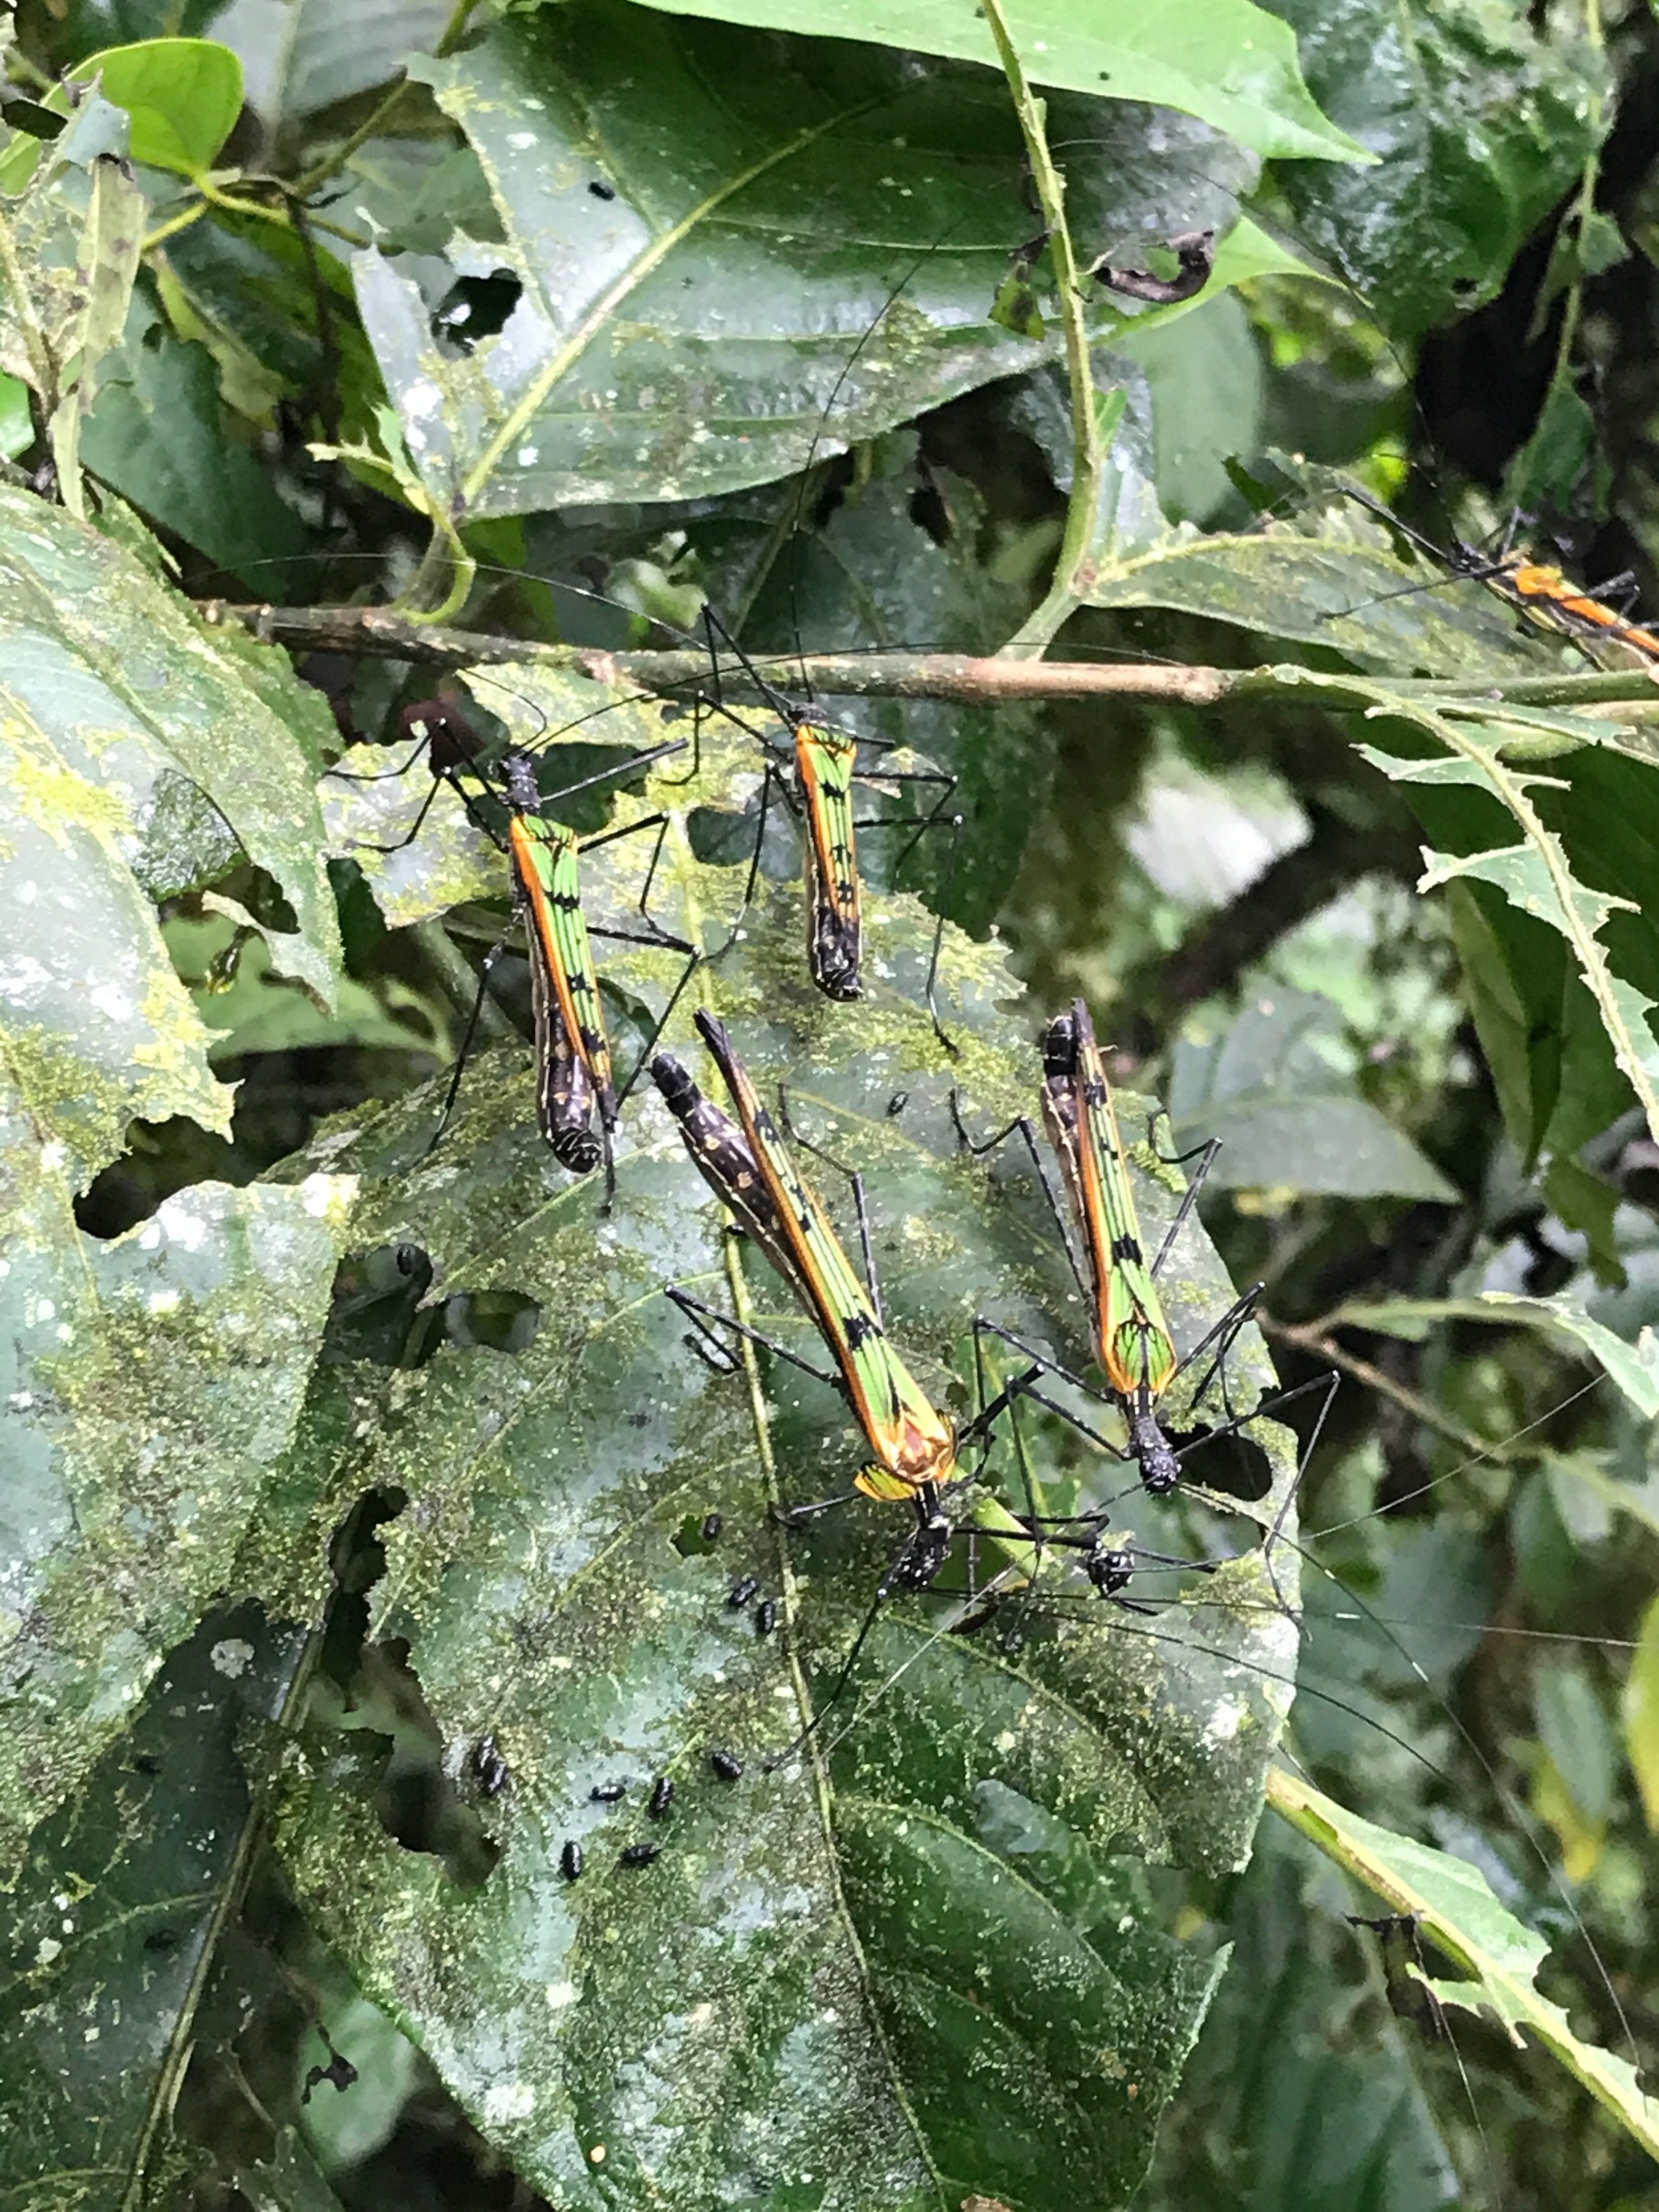 bugs on a leaf.jpg